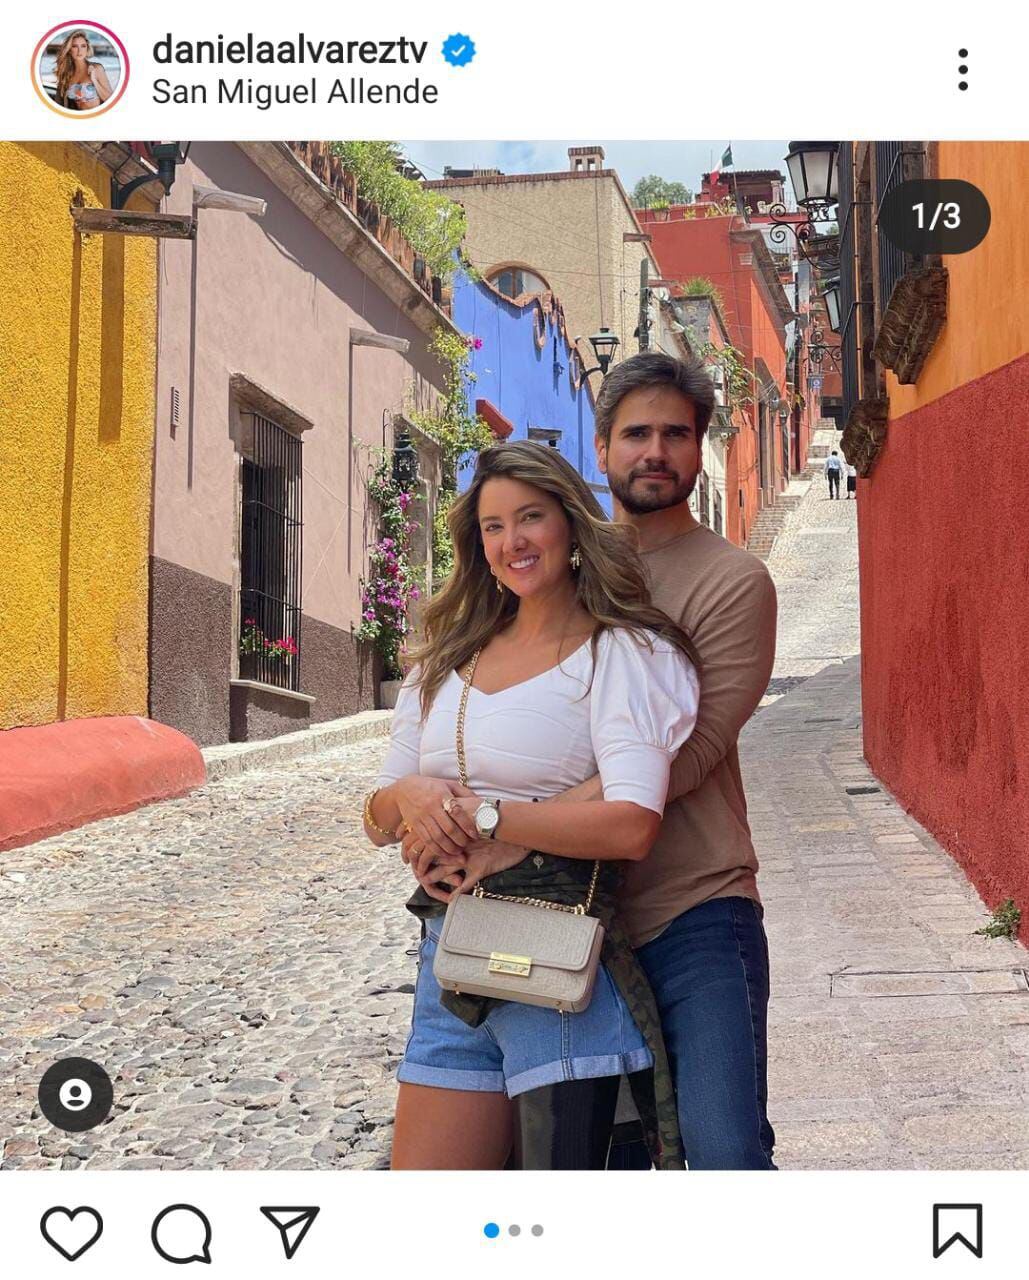 Daniel Arenas continúa en una relación con la presentadora Daniela Álvarez, pero sus publicaciones en redes sociales juntos han sido un misterio - crédito @danielaalvareztv/Instagram